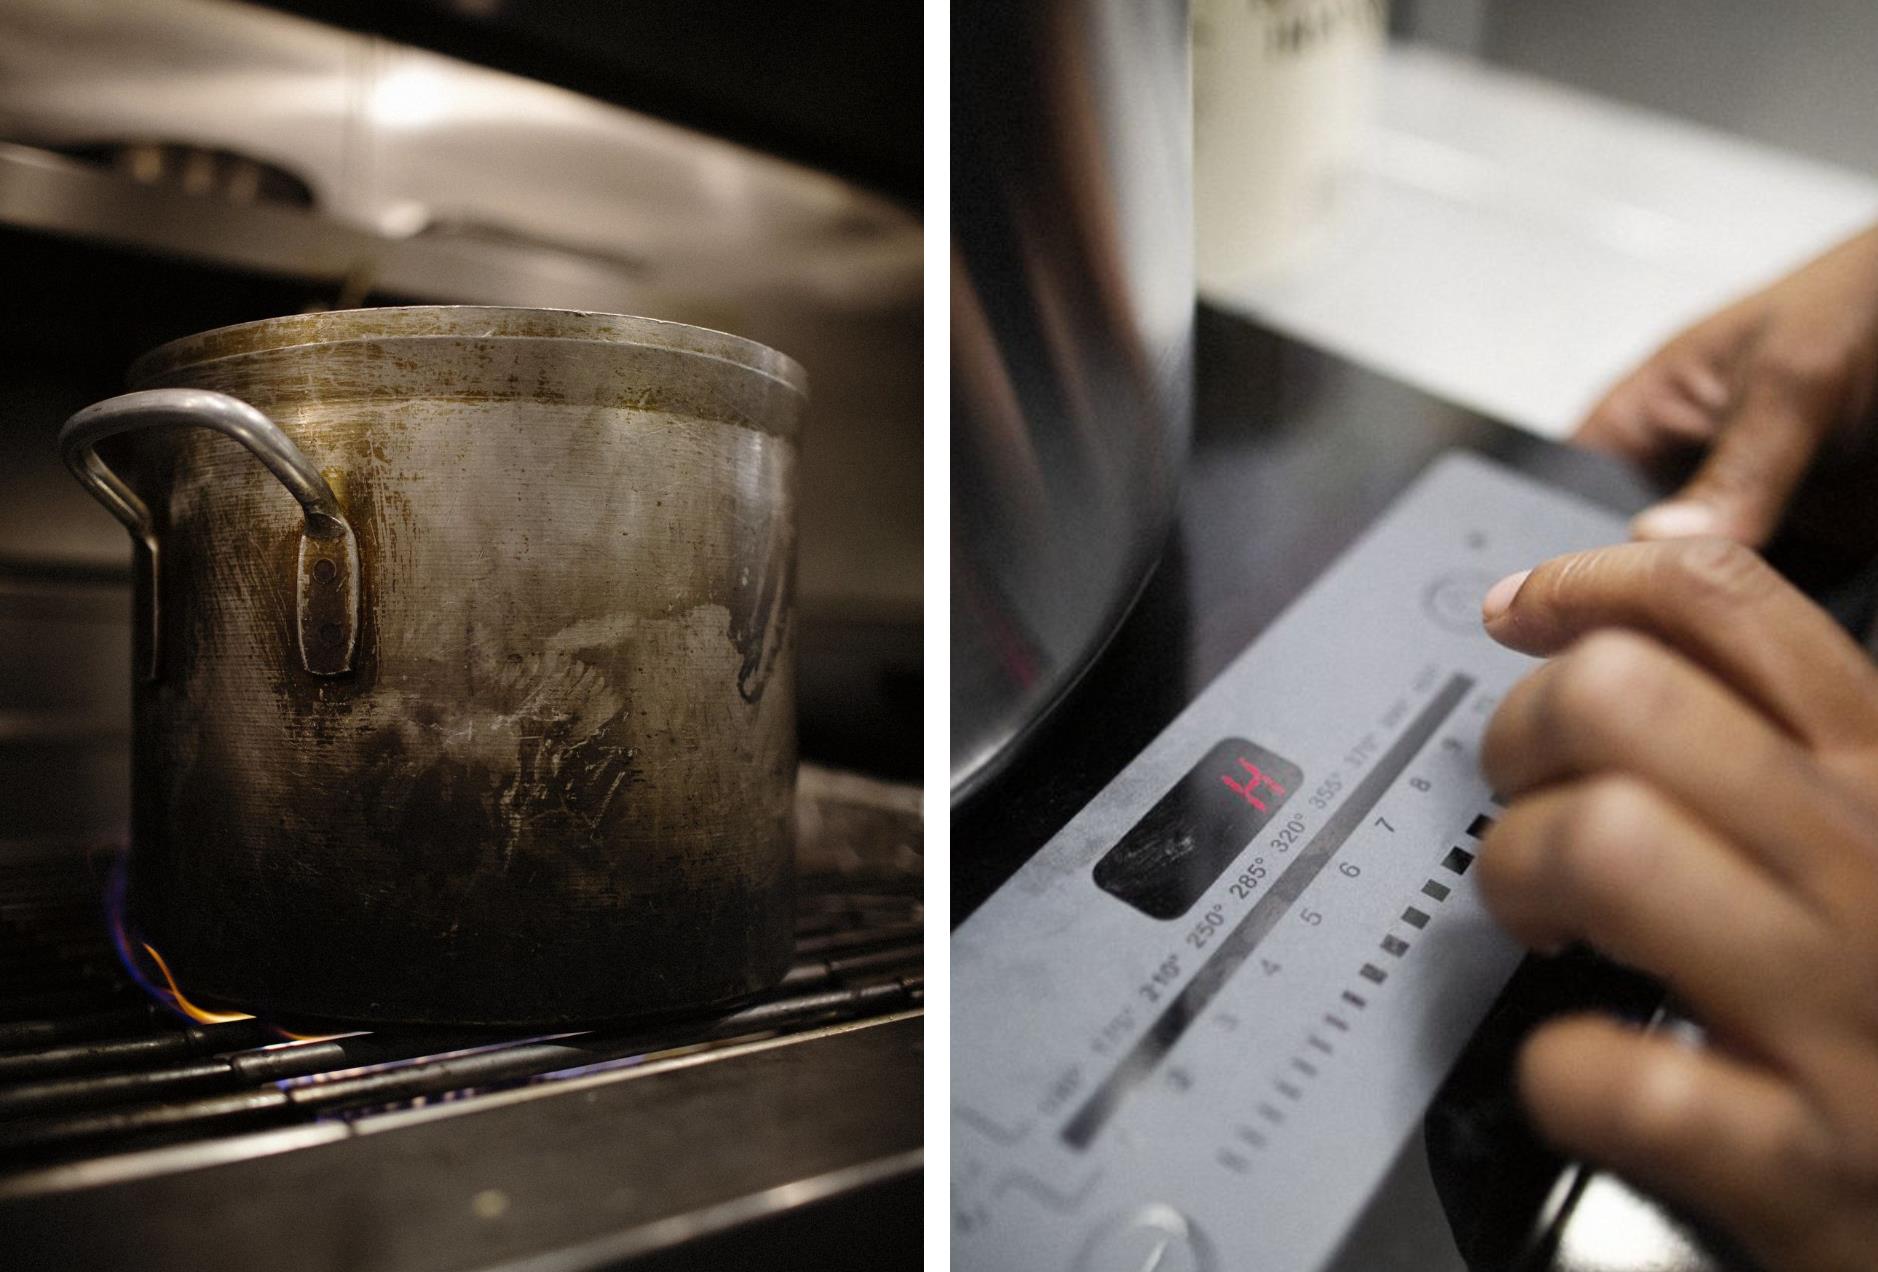 Việc Mỹ cấm bếp gas liệu có đe dọa nghệ thuật nấu ăn bằng chảo của người Trung Quốc? - Ảnh 2.